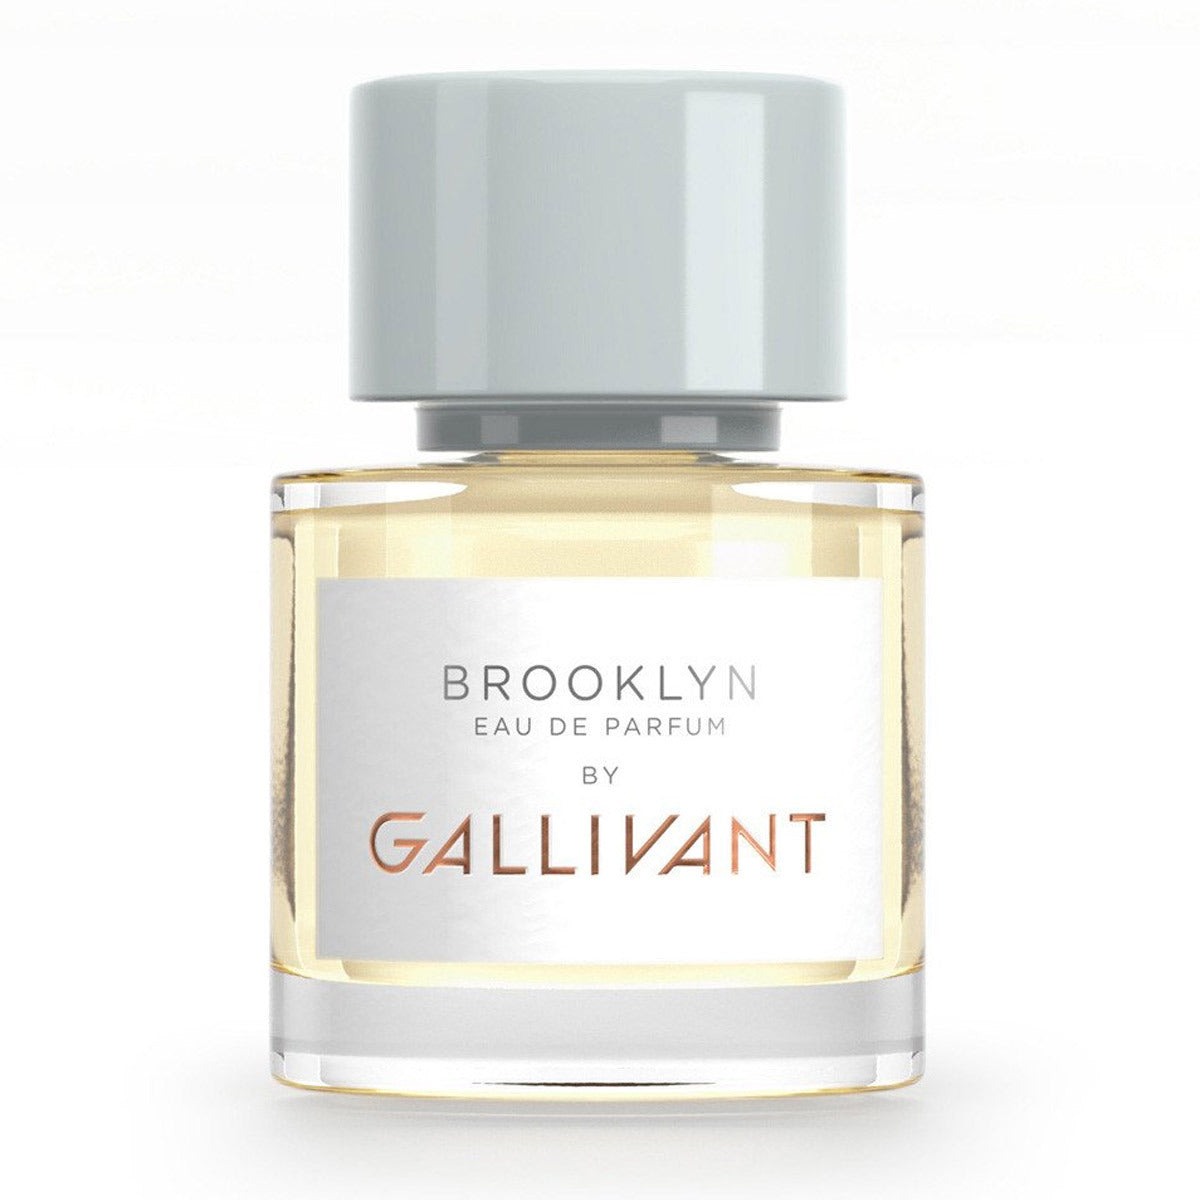 Primary image of Brooklyn Eau de Parfum